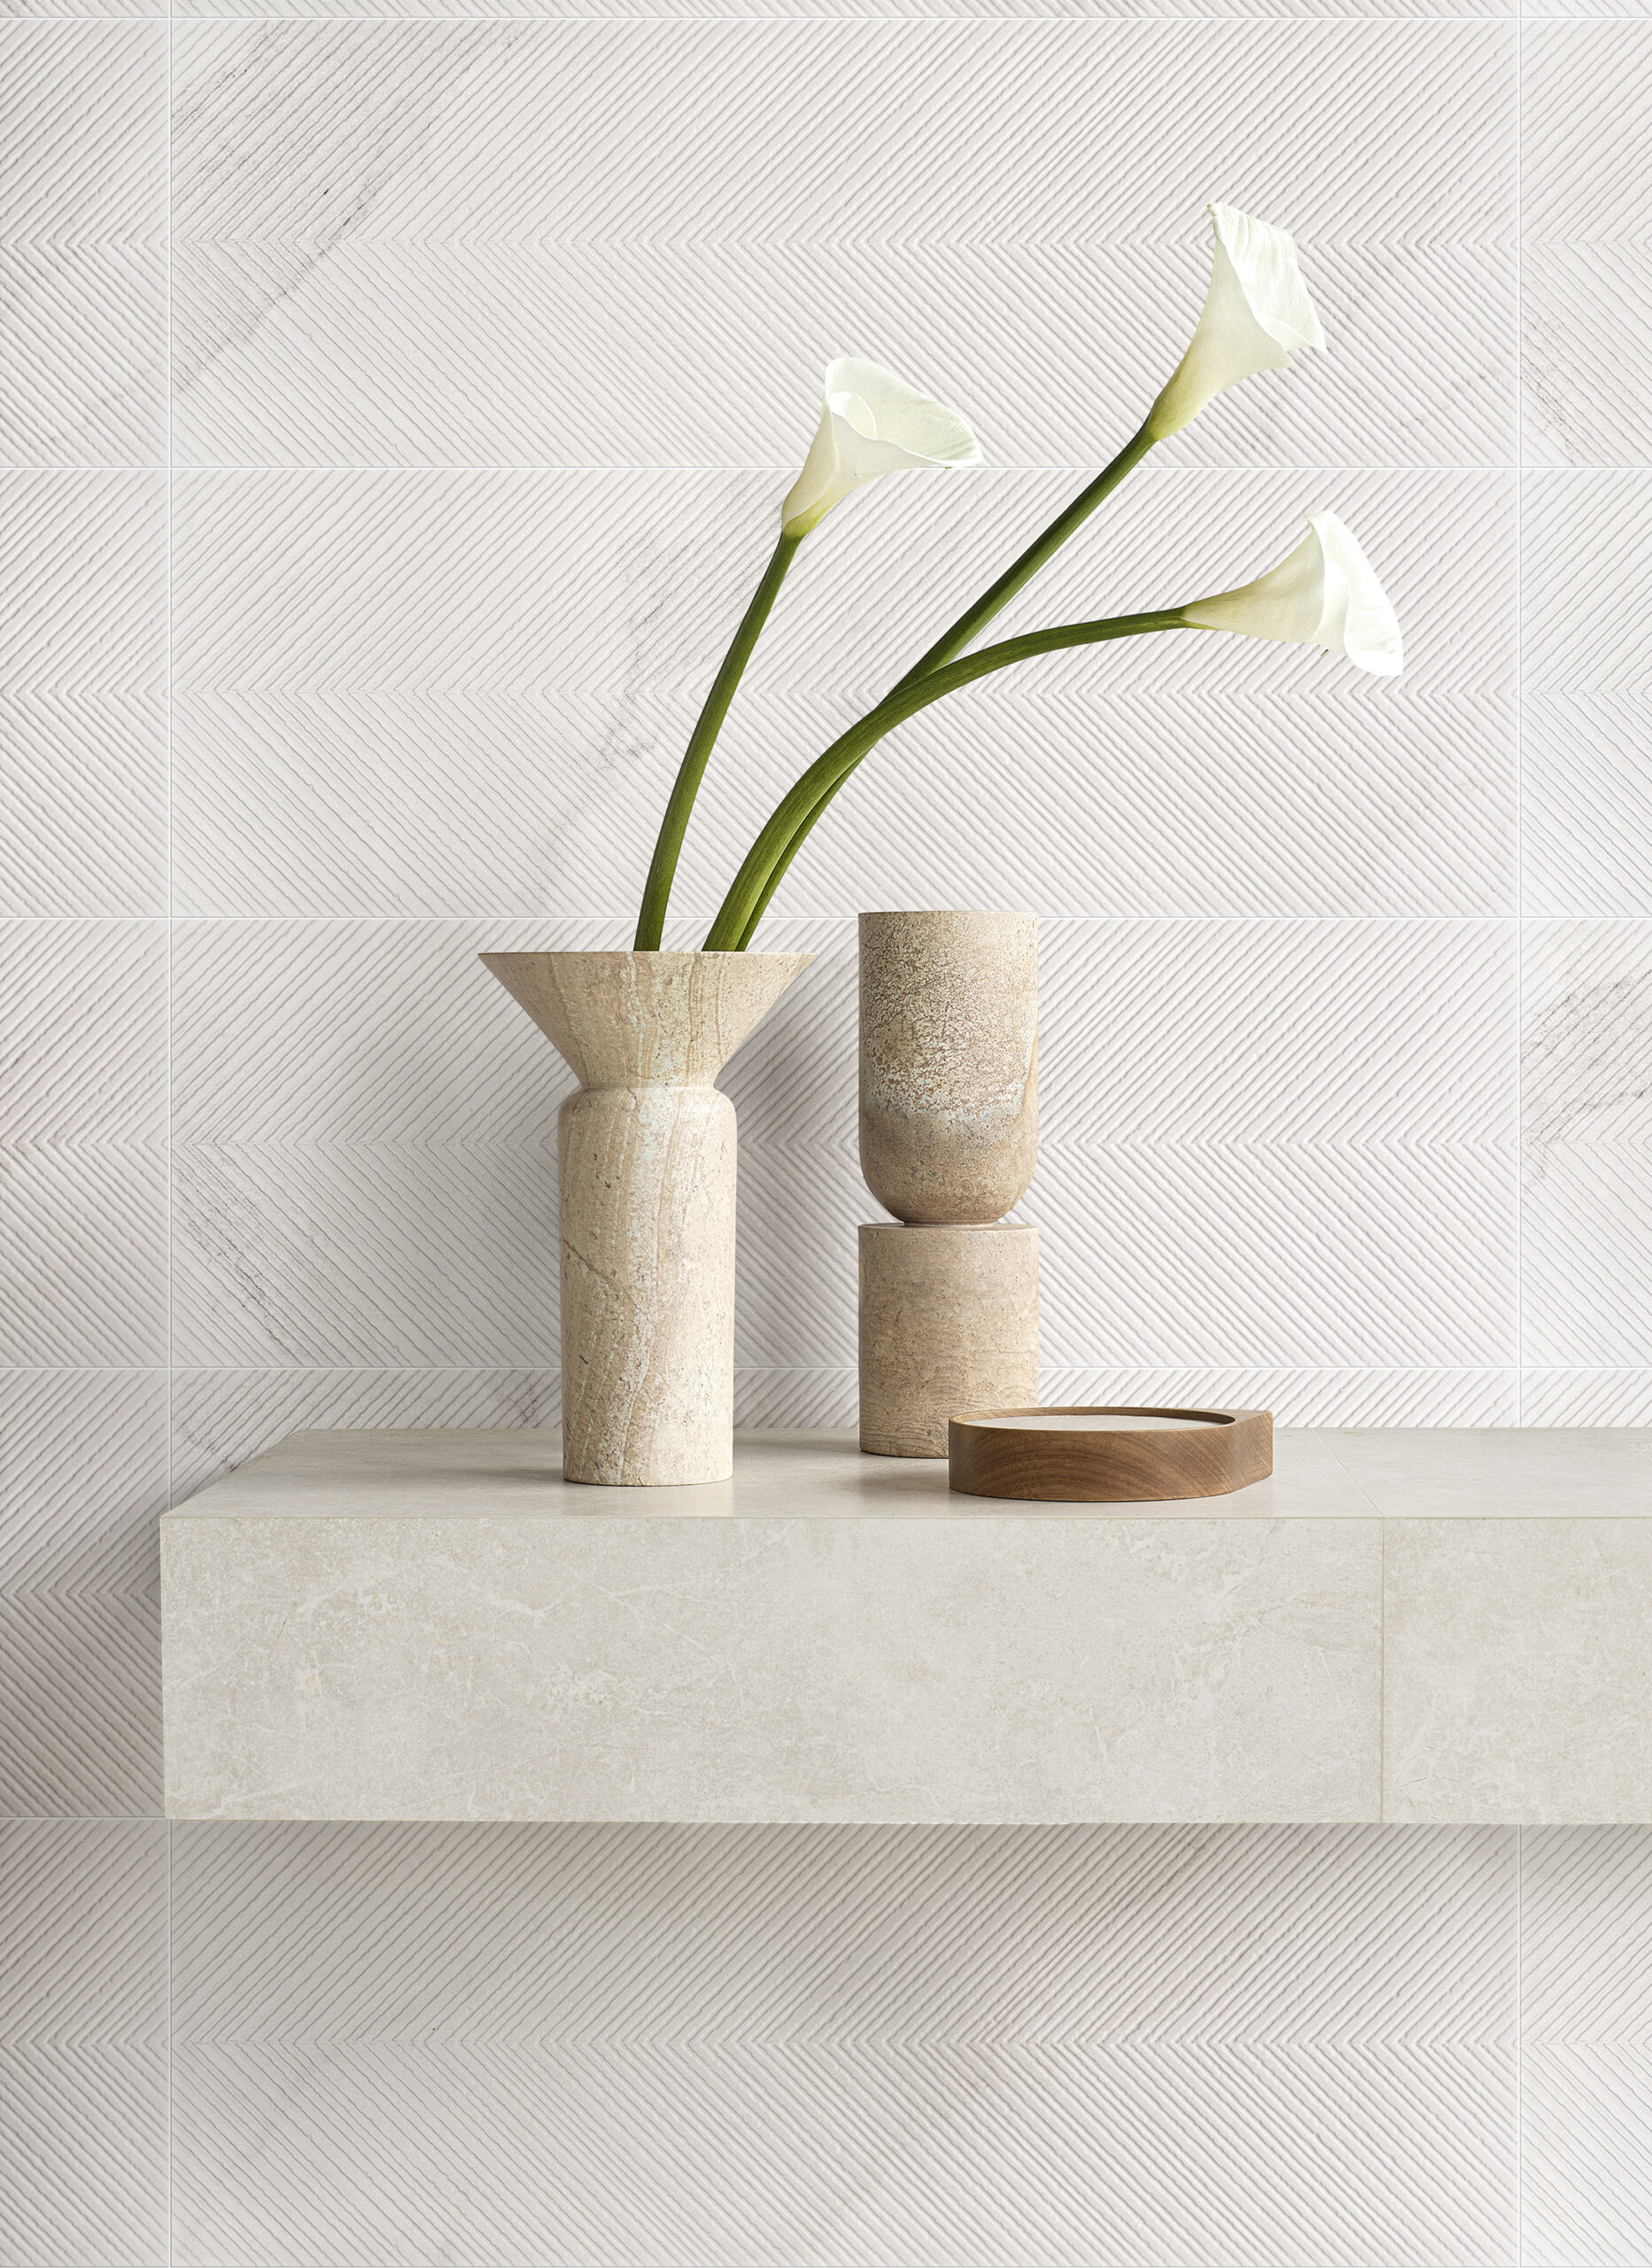 Calacatta Blanc Vic é uma forma ousada de reproduzir o tradicional mármore Calacatta, levando textura e estilo para qualquer ambiente